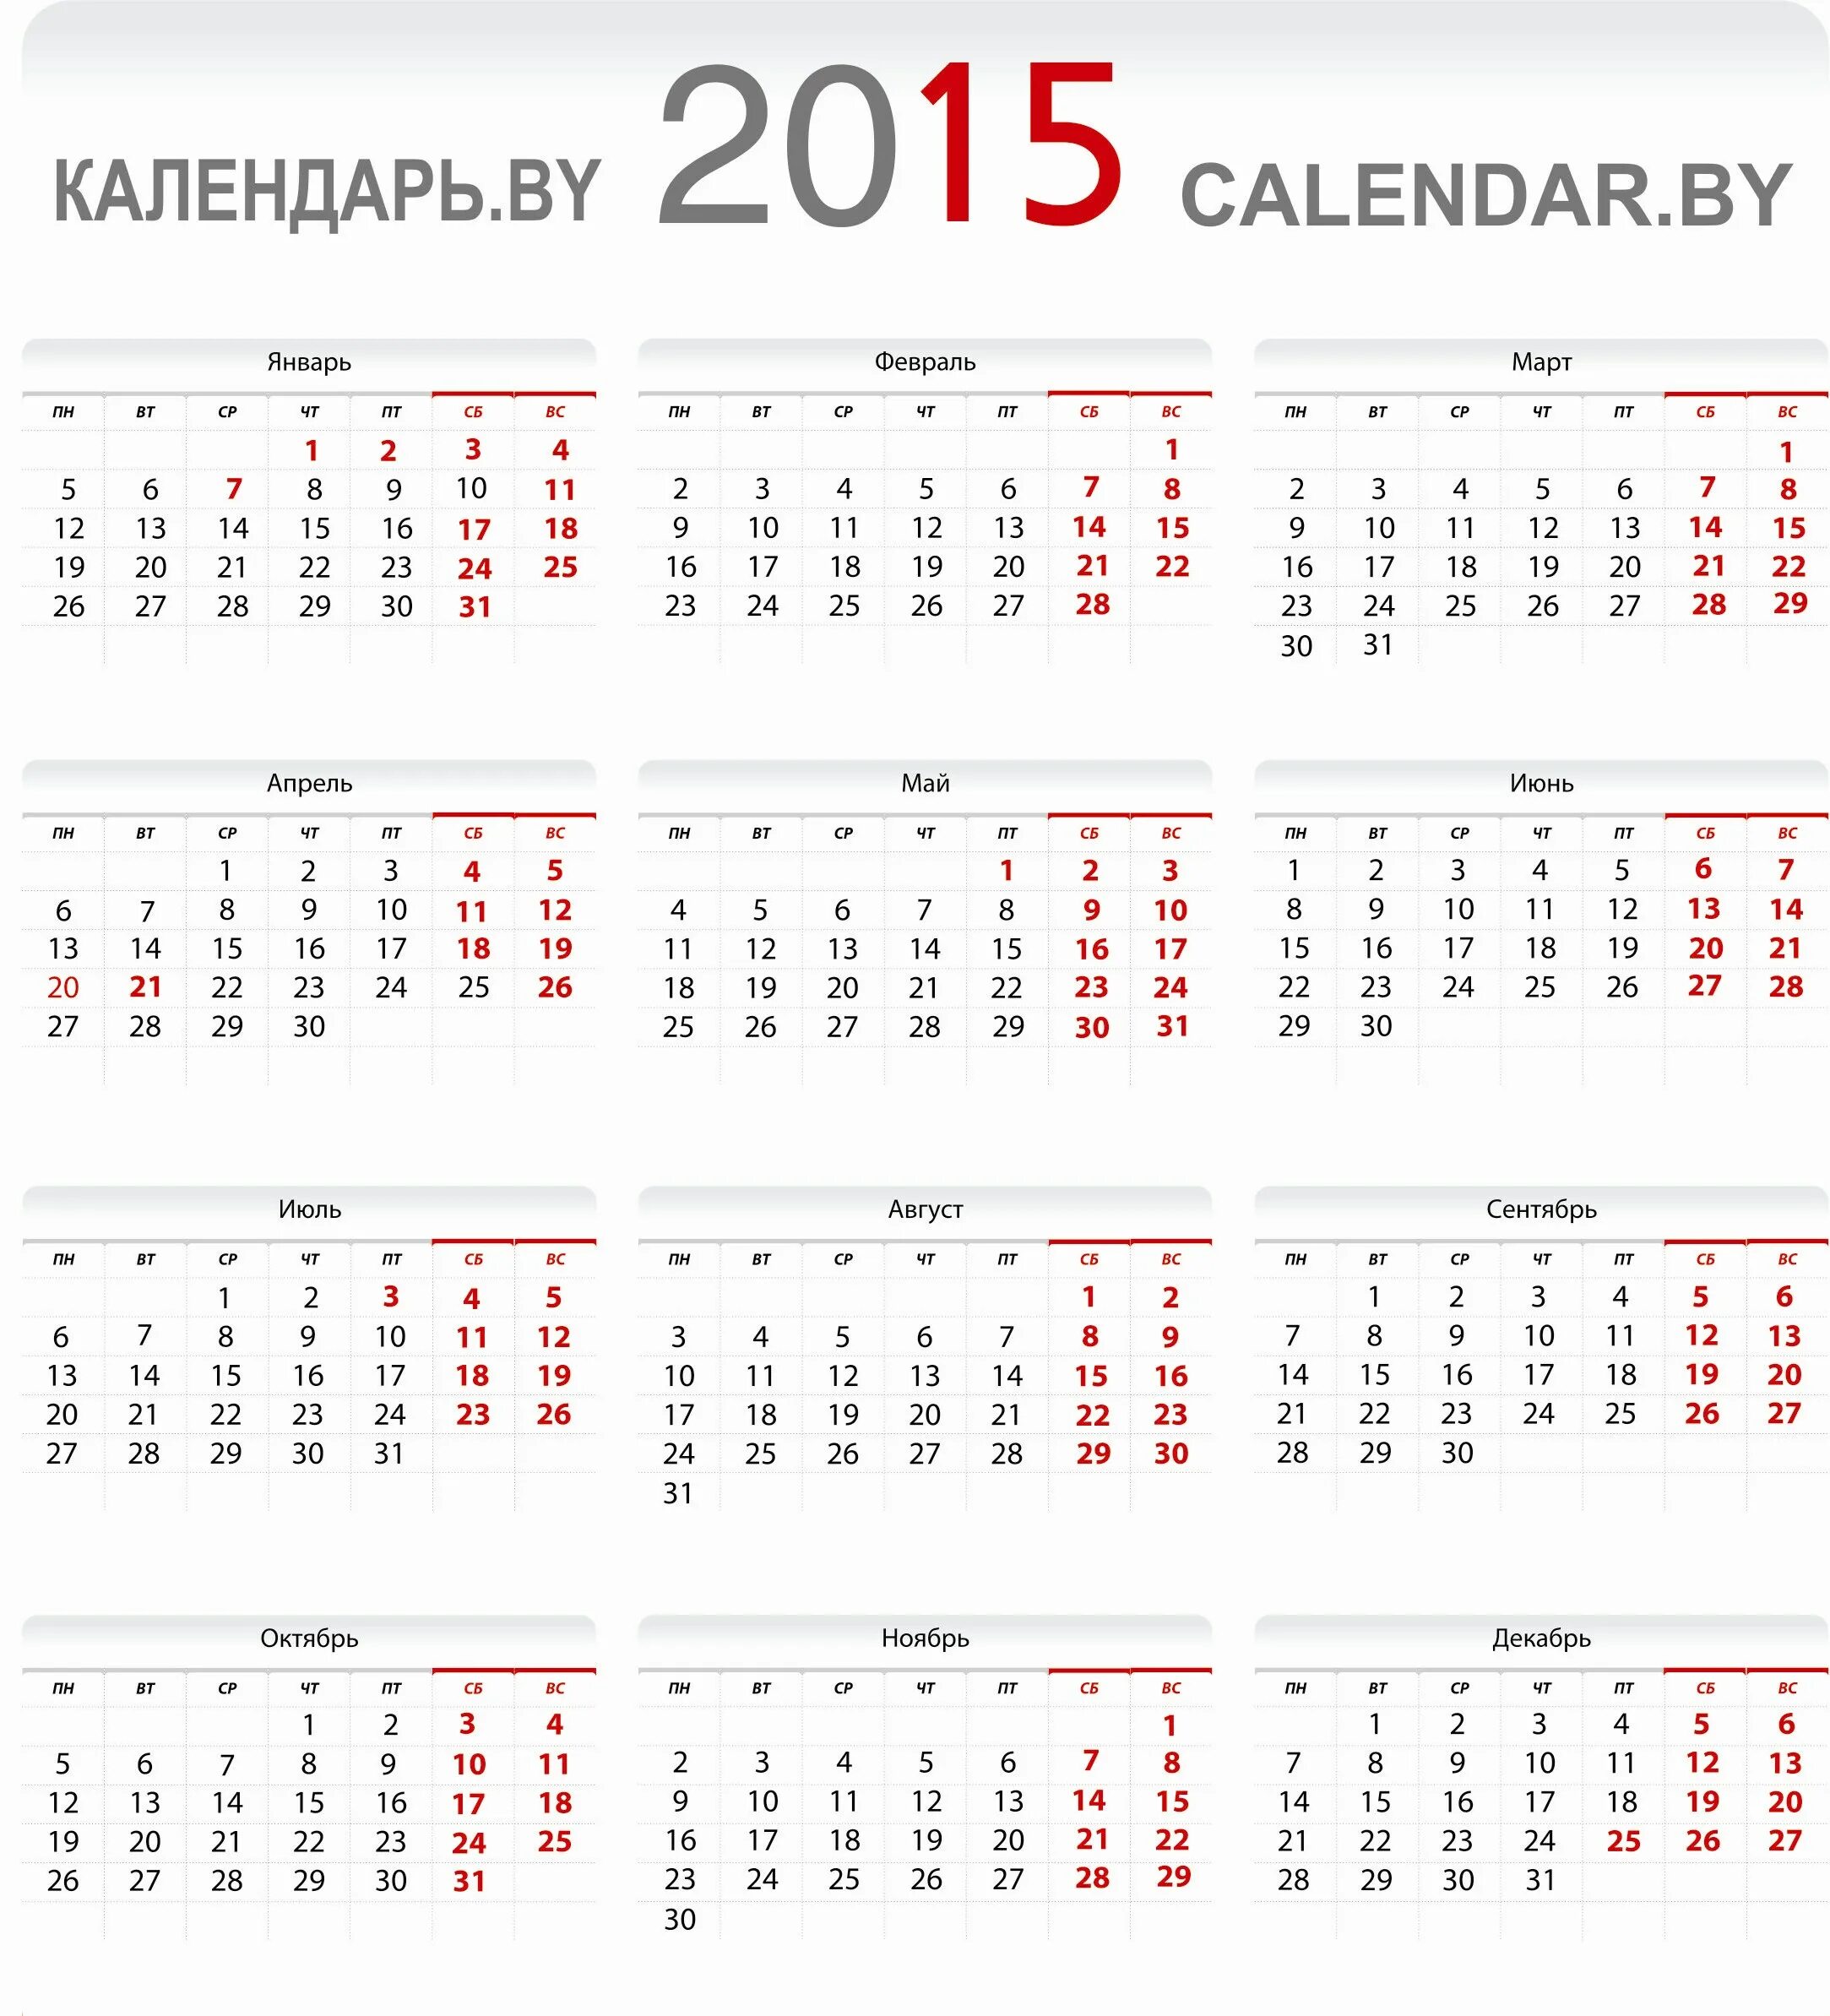 Календарь 2015. Календарь на 2015 год. Календарь 2015г. Календарь 2015 года по месяцам. Производственный календарь 2016